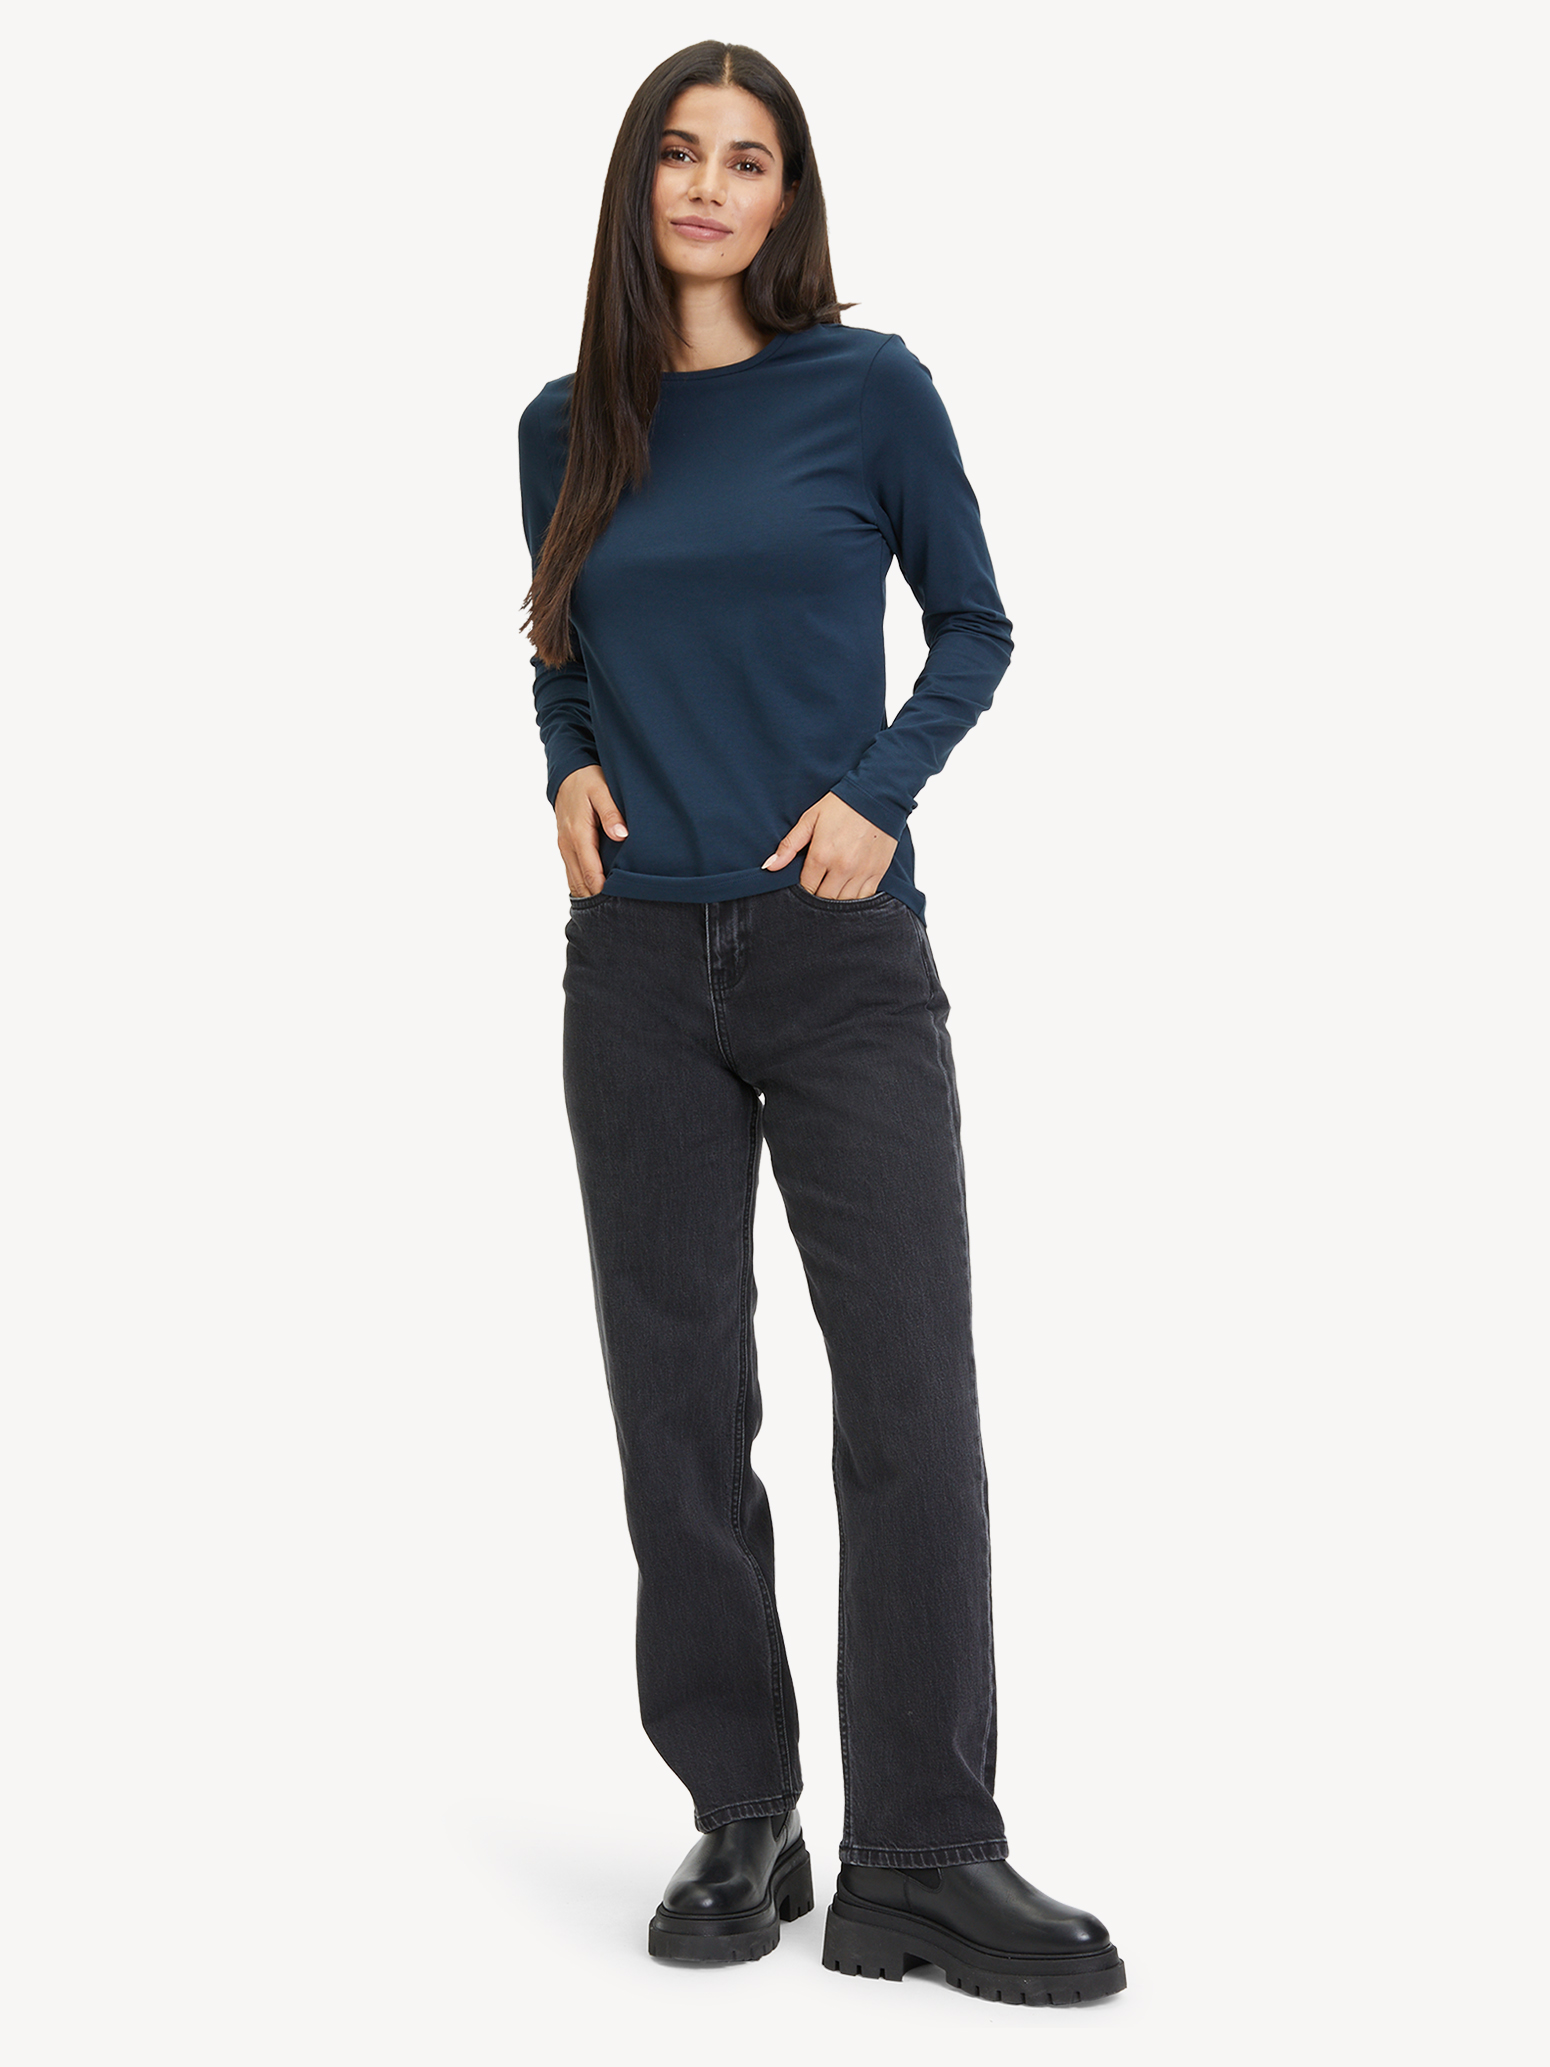 Langarmshirt - blau TAW0308-50059: online & Tamaris kaufen! Sweatshirts Hoodies